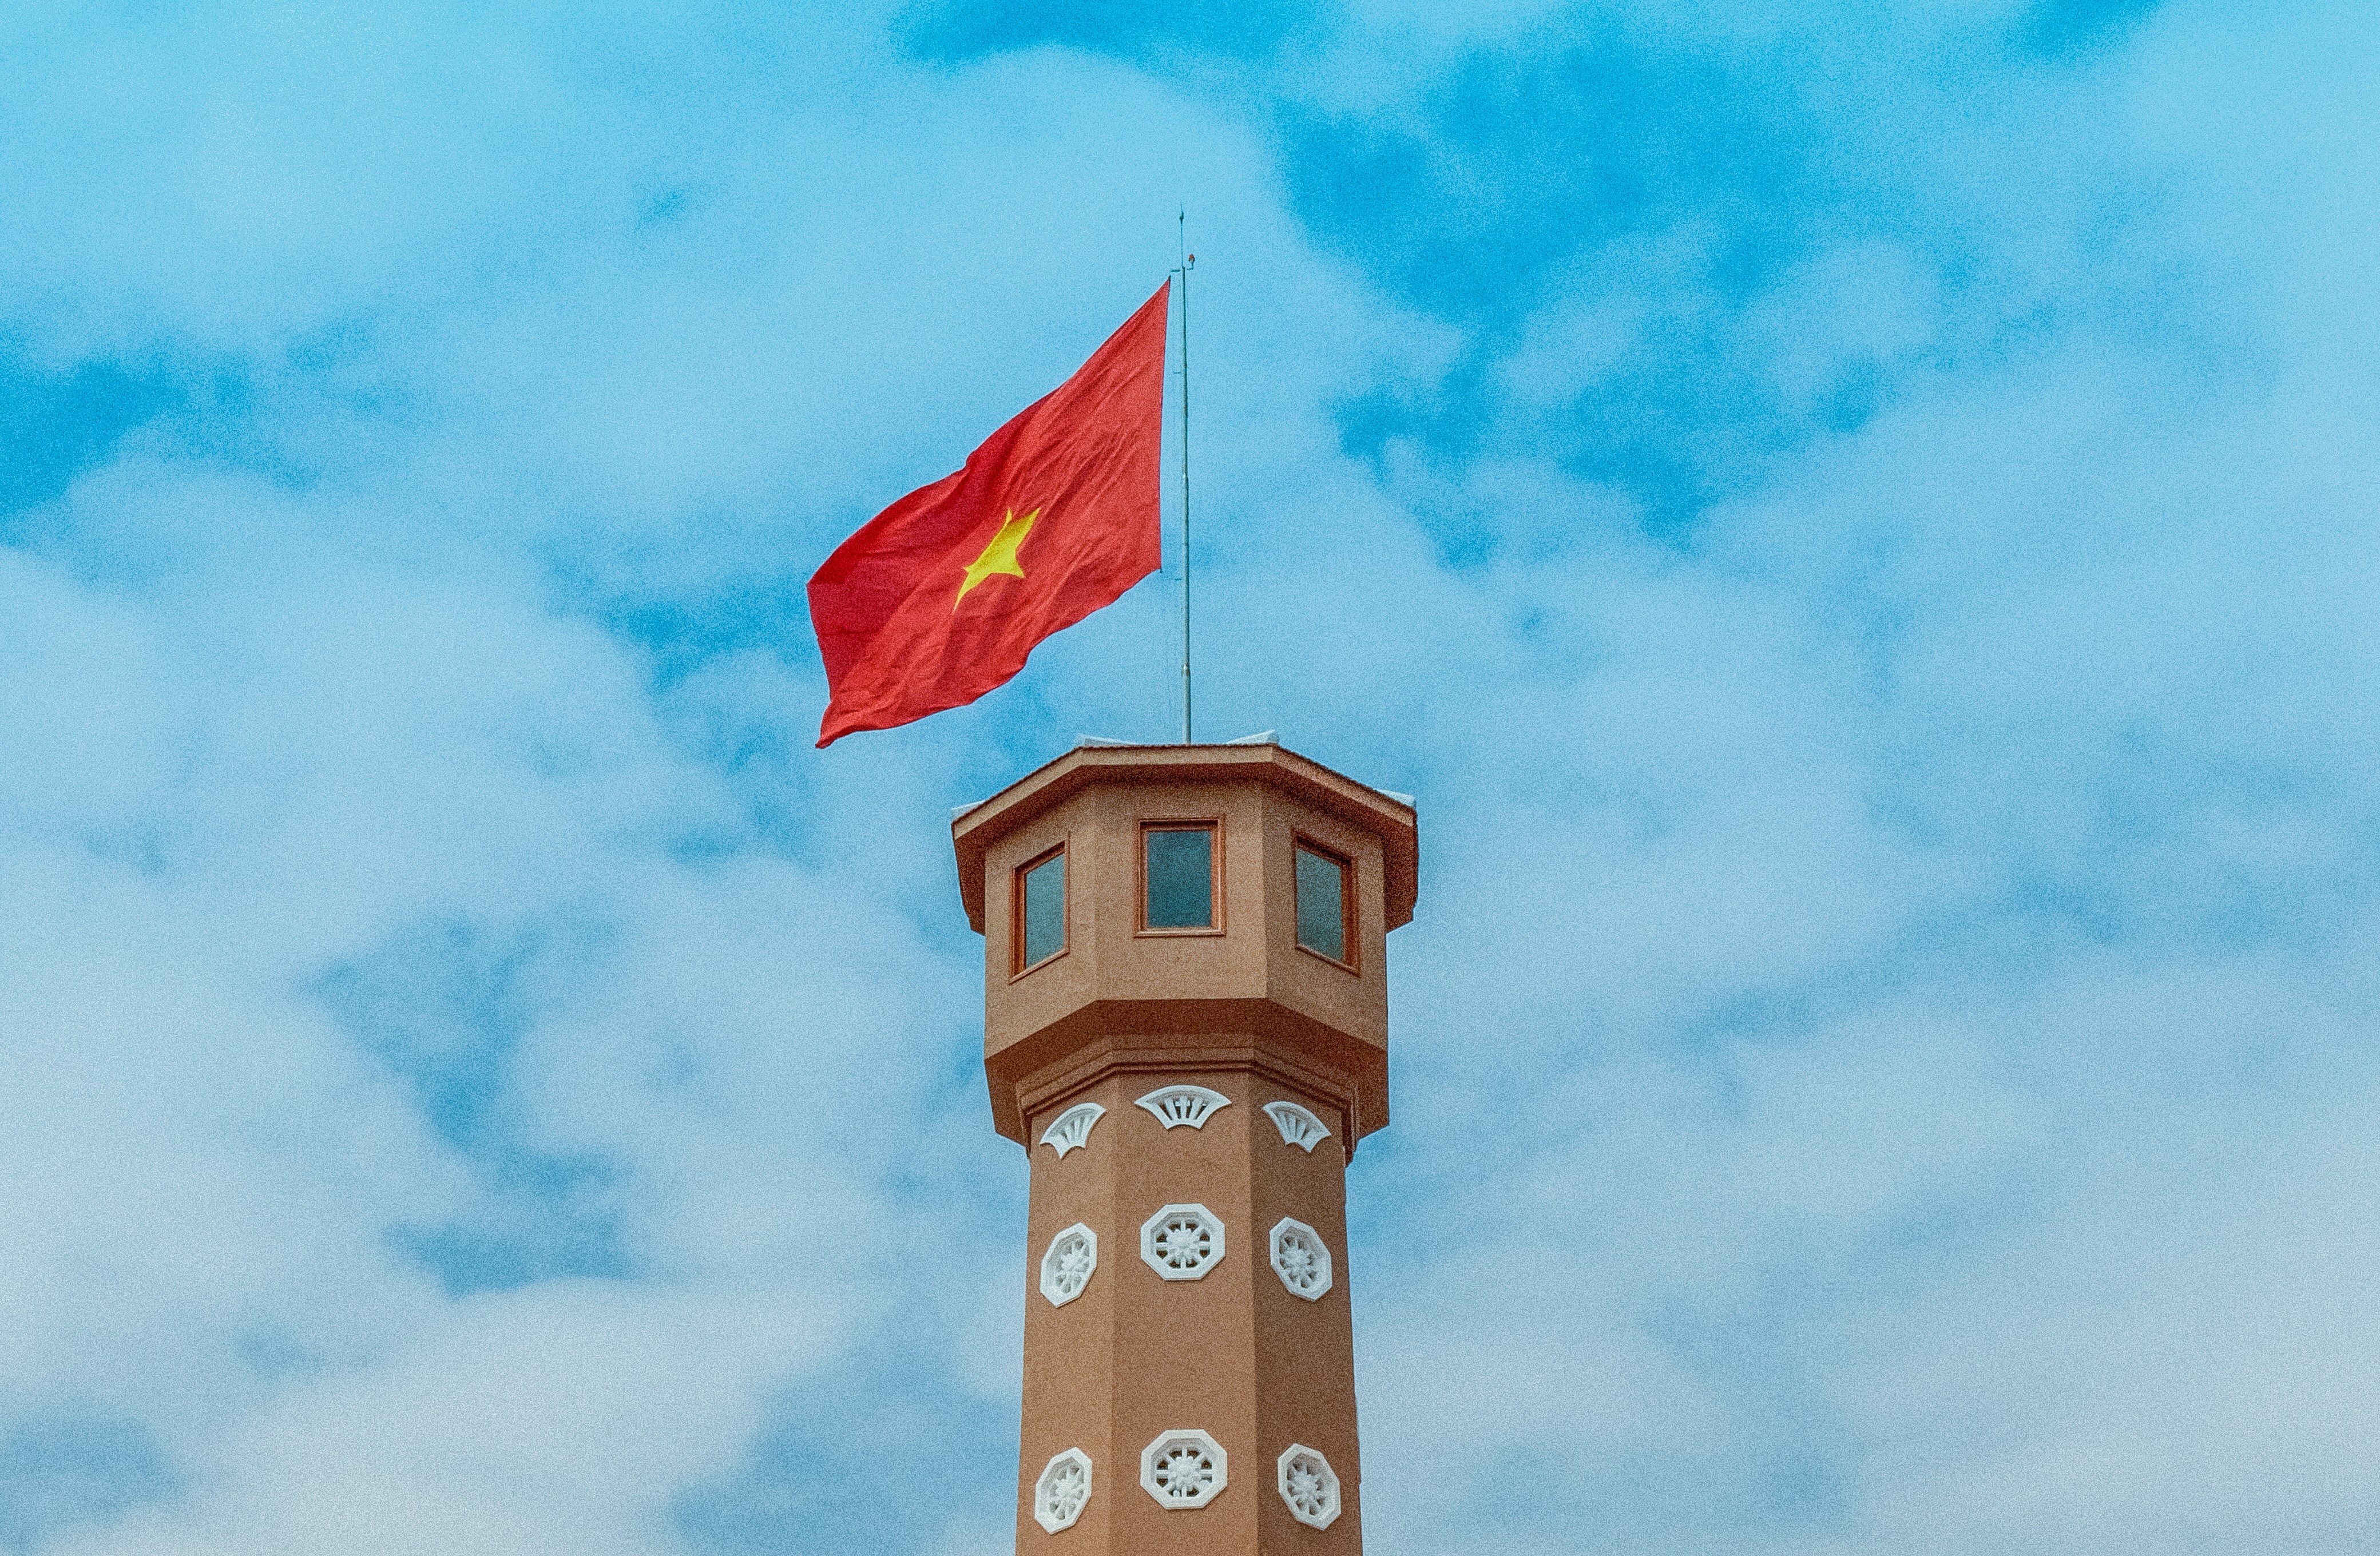 การฟื้นตัวของอุตสาหกรรมการท่องเที่ยวจะสร้างประโยชน์ให้กับประเทศในเอเชียตะวันออกเฉียงใต้อย่างมหาศาล  ภาพ／จากคลังภาพ Pixabay